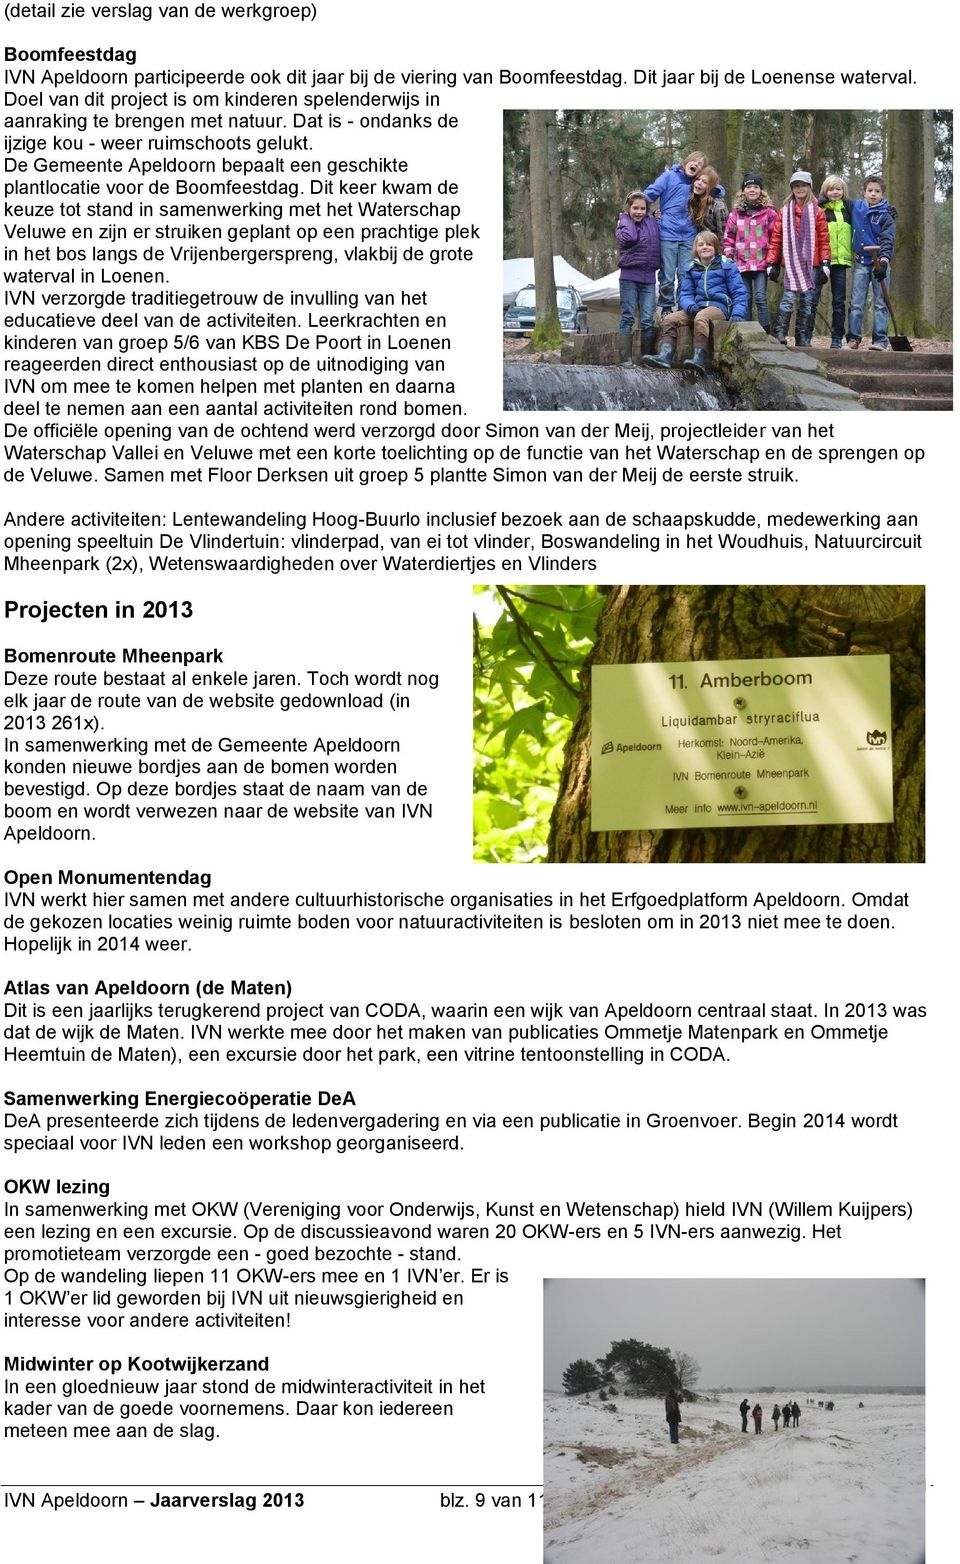 De Gemeente Apeldoorn bepaalt een geschikte plantlocatie voor de Boomfeestdag.